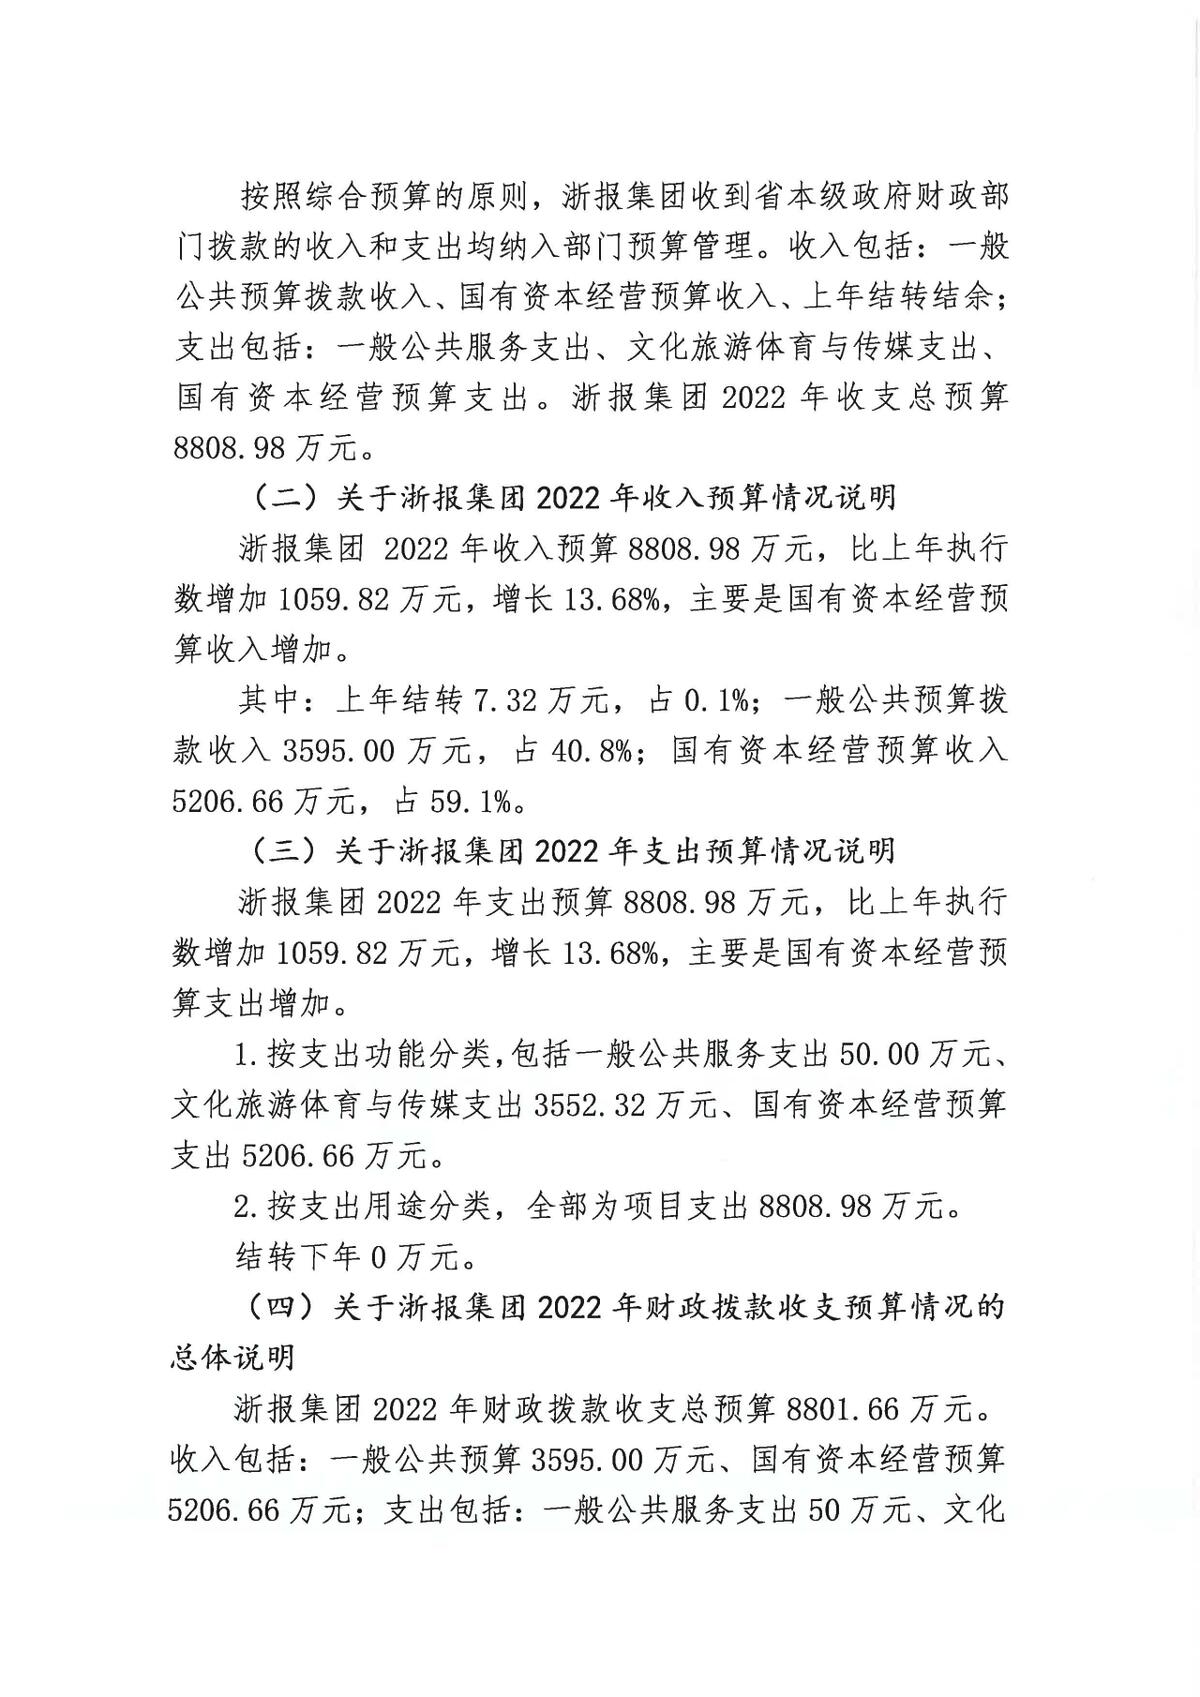 浙江日报报业集团2022年部门预算公开_页面_05.jpg